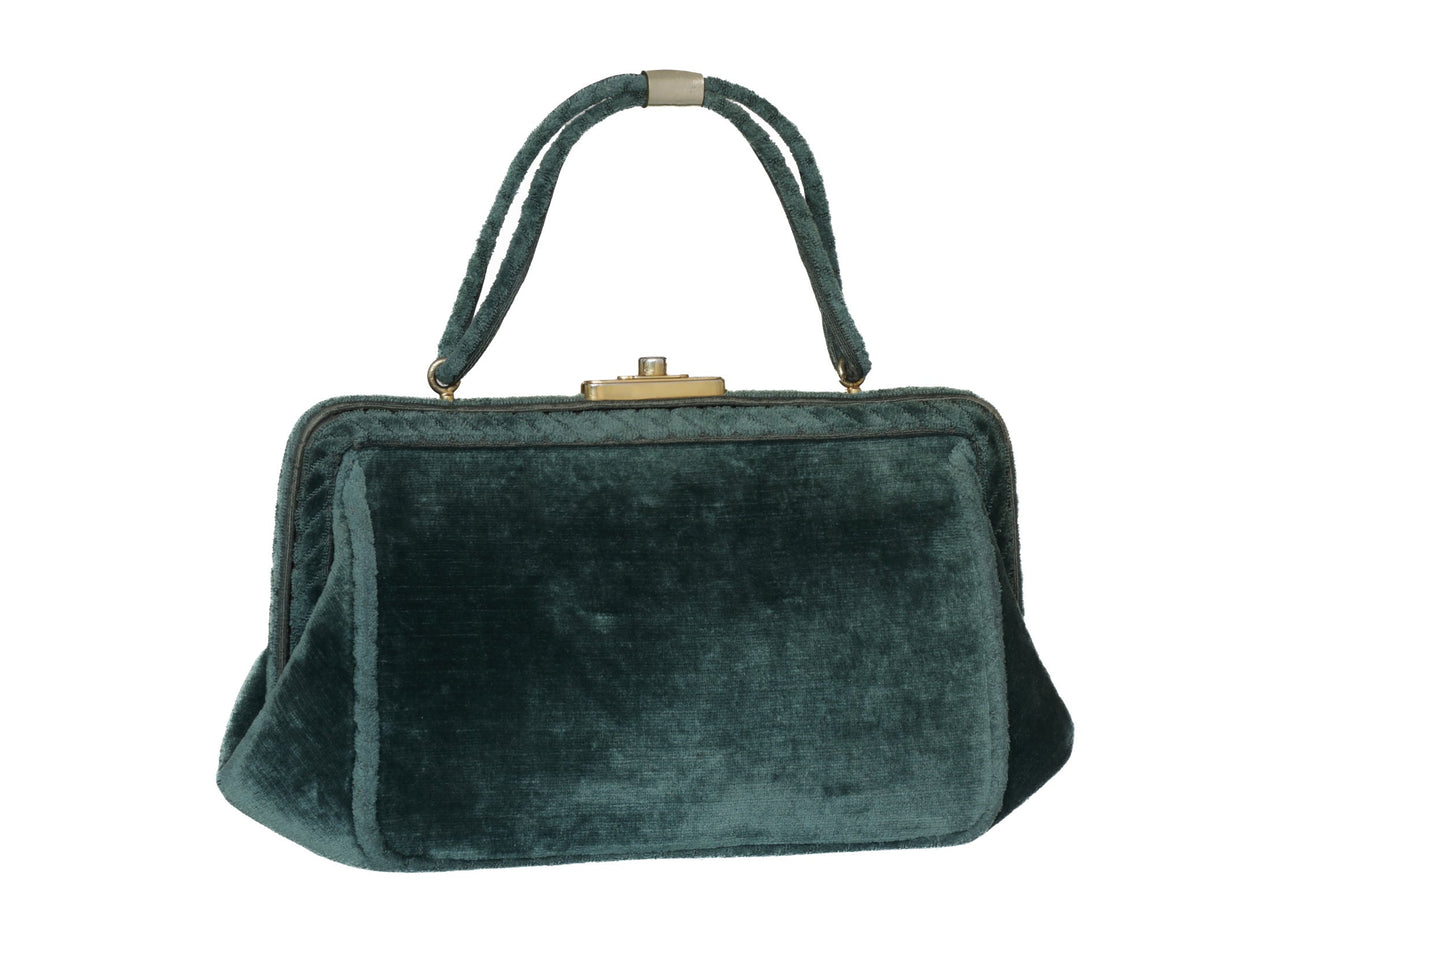 1950s Roberta di Camerino handbag in green devorè velvet